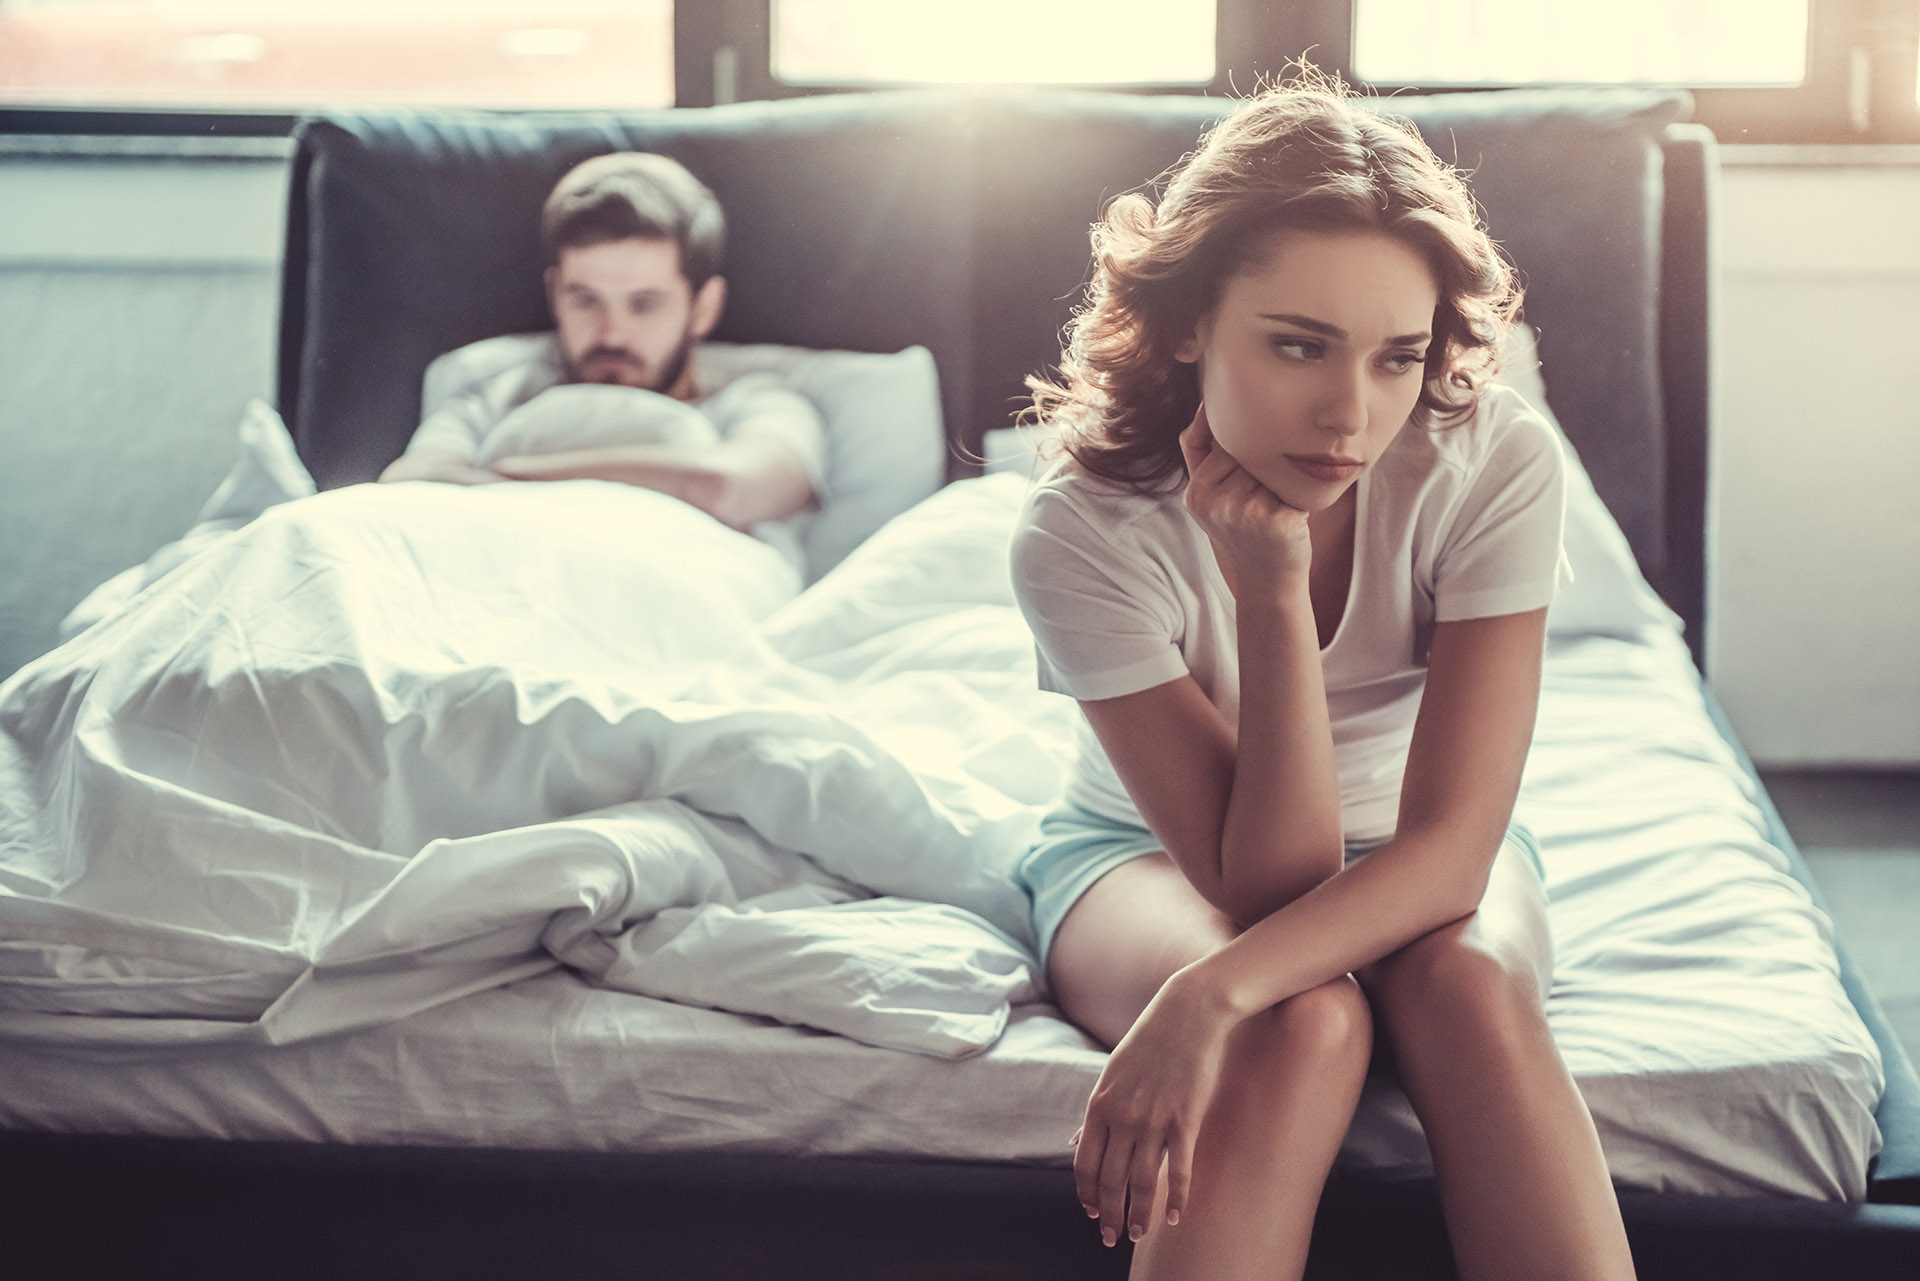 En el cuckolding, las parejas se convocan y cuentan sus experiencias de intercambio sexual en internet (Shutterstock)